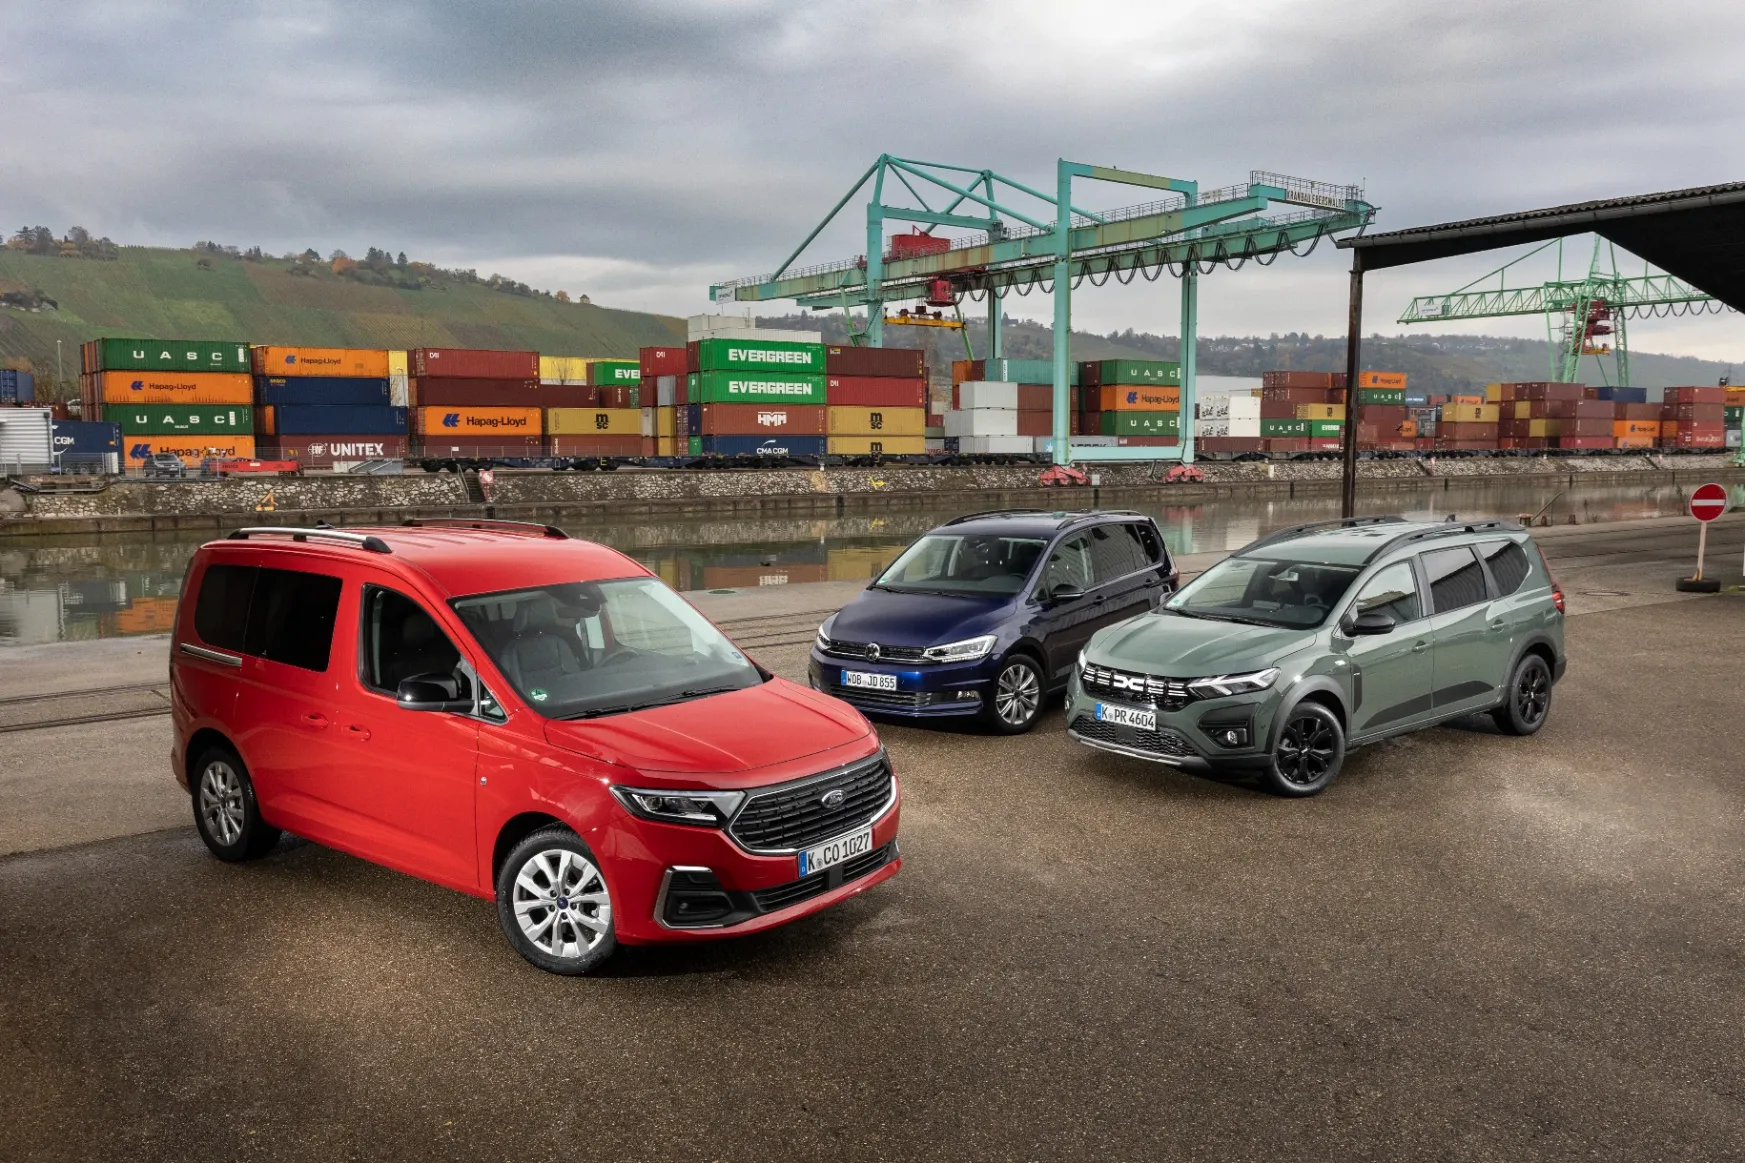 Jobb választás az olcsó, családi Dacia, mint a furgonszerű Ford és az egyterű Volkswagen?